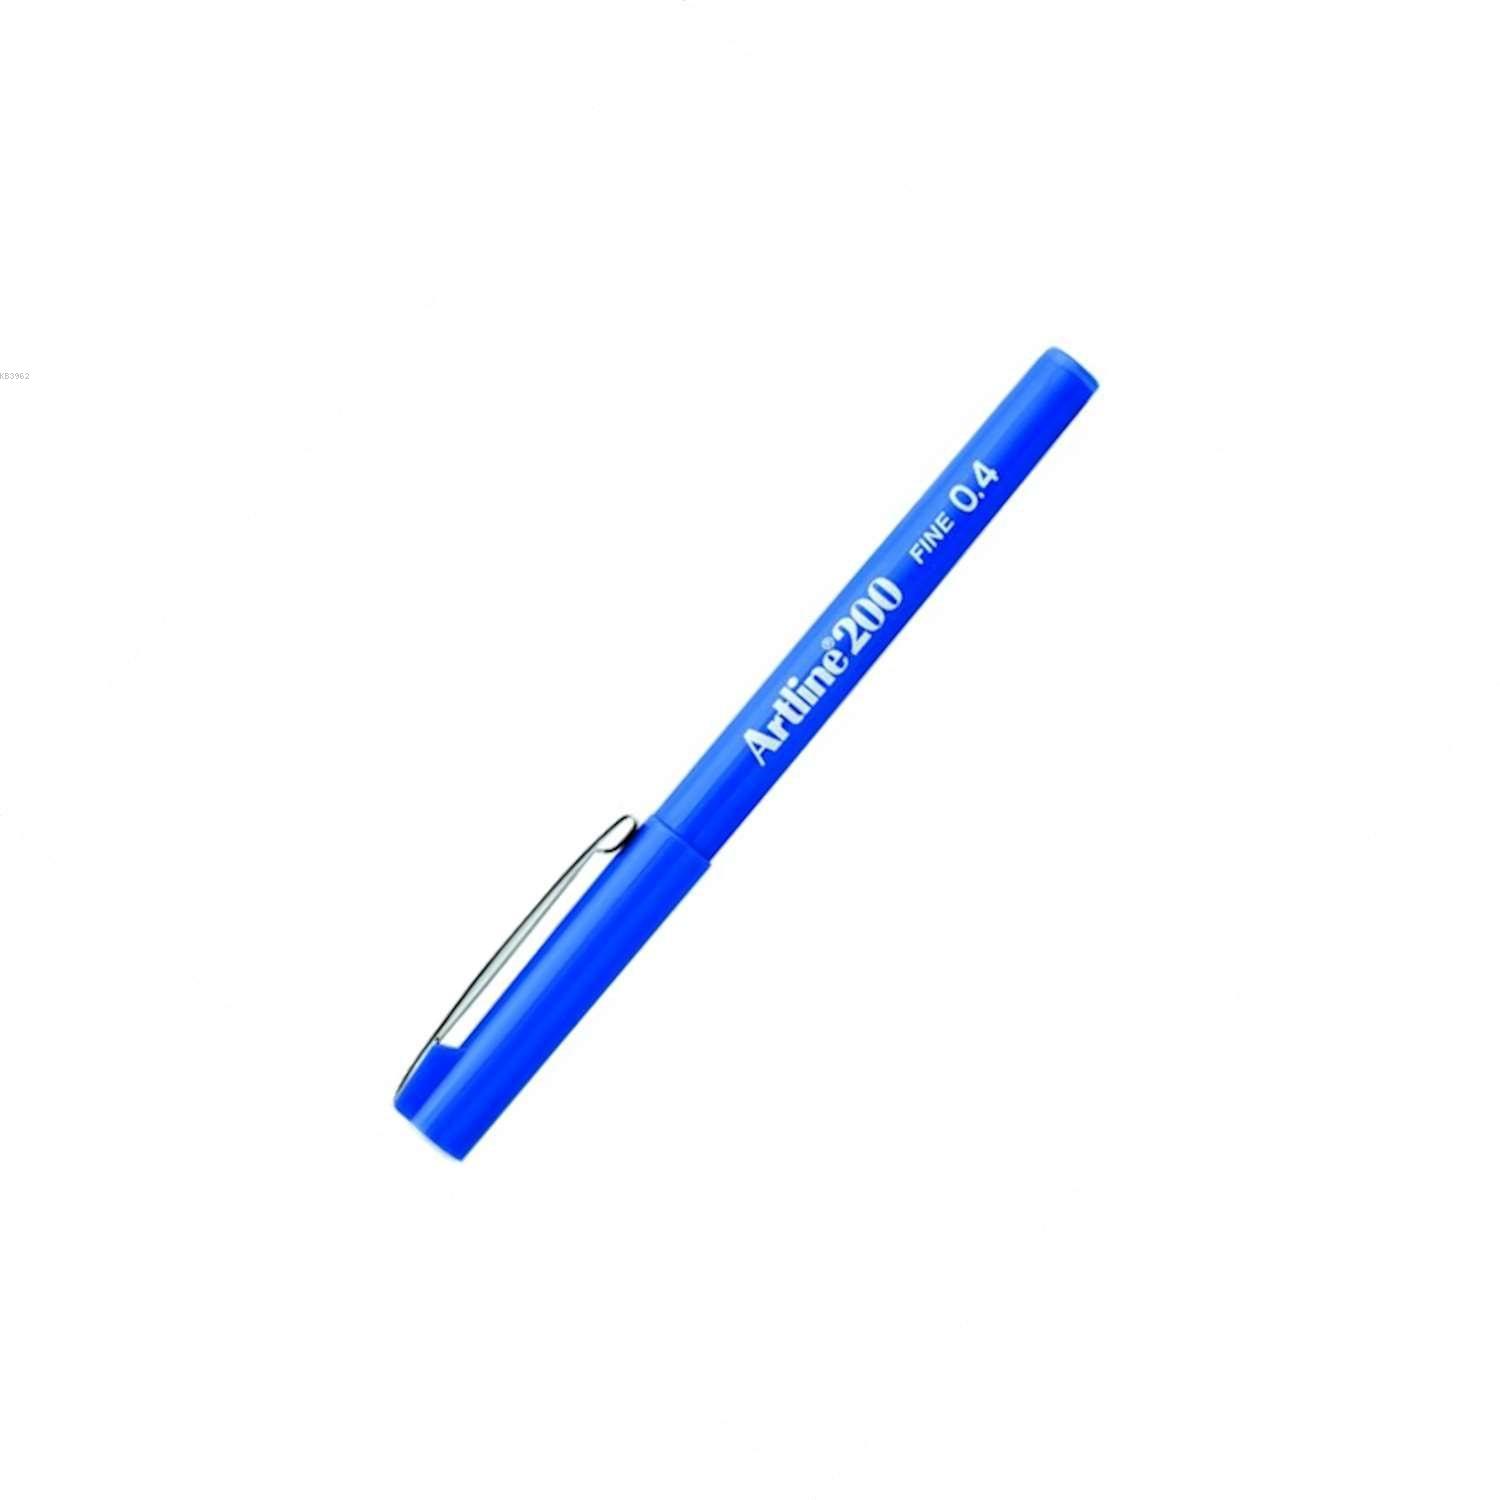 Artline 200N Fine Writing Pen Blue